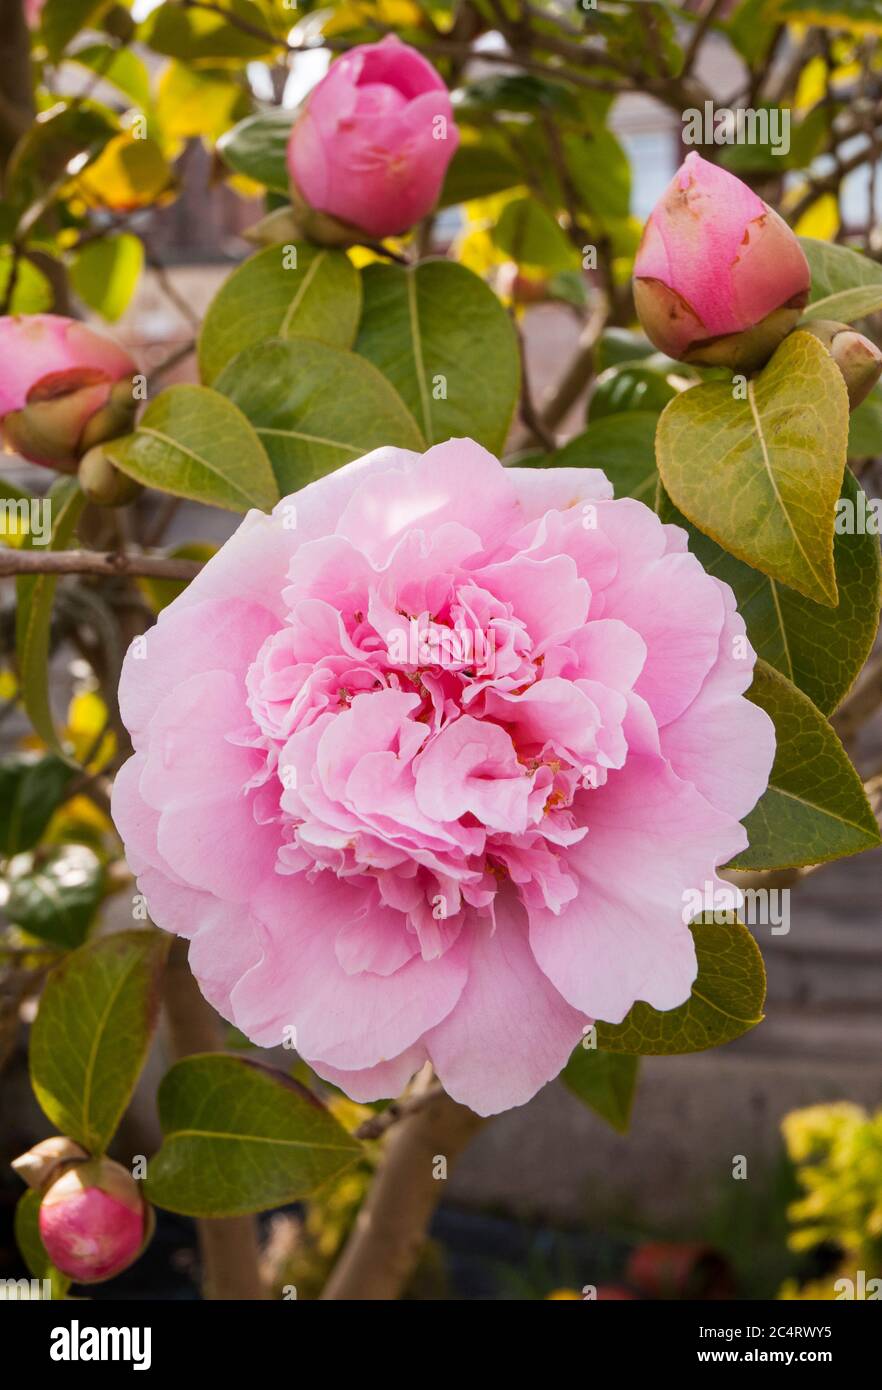 Gros plan d'une fleur rose d'Anemone formée de Camellia japonica avec des bourgeons en arrière-plan. Un arbuste à fleurs à feuilles persistantes, entièrement endurci d'hiver à printemps. Banque D'Images